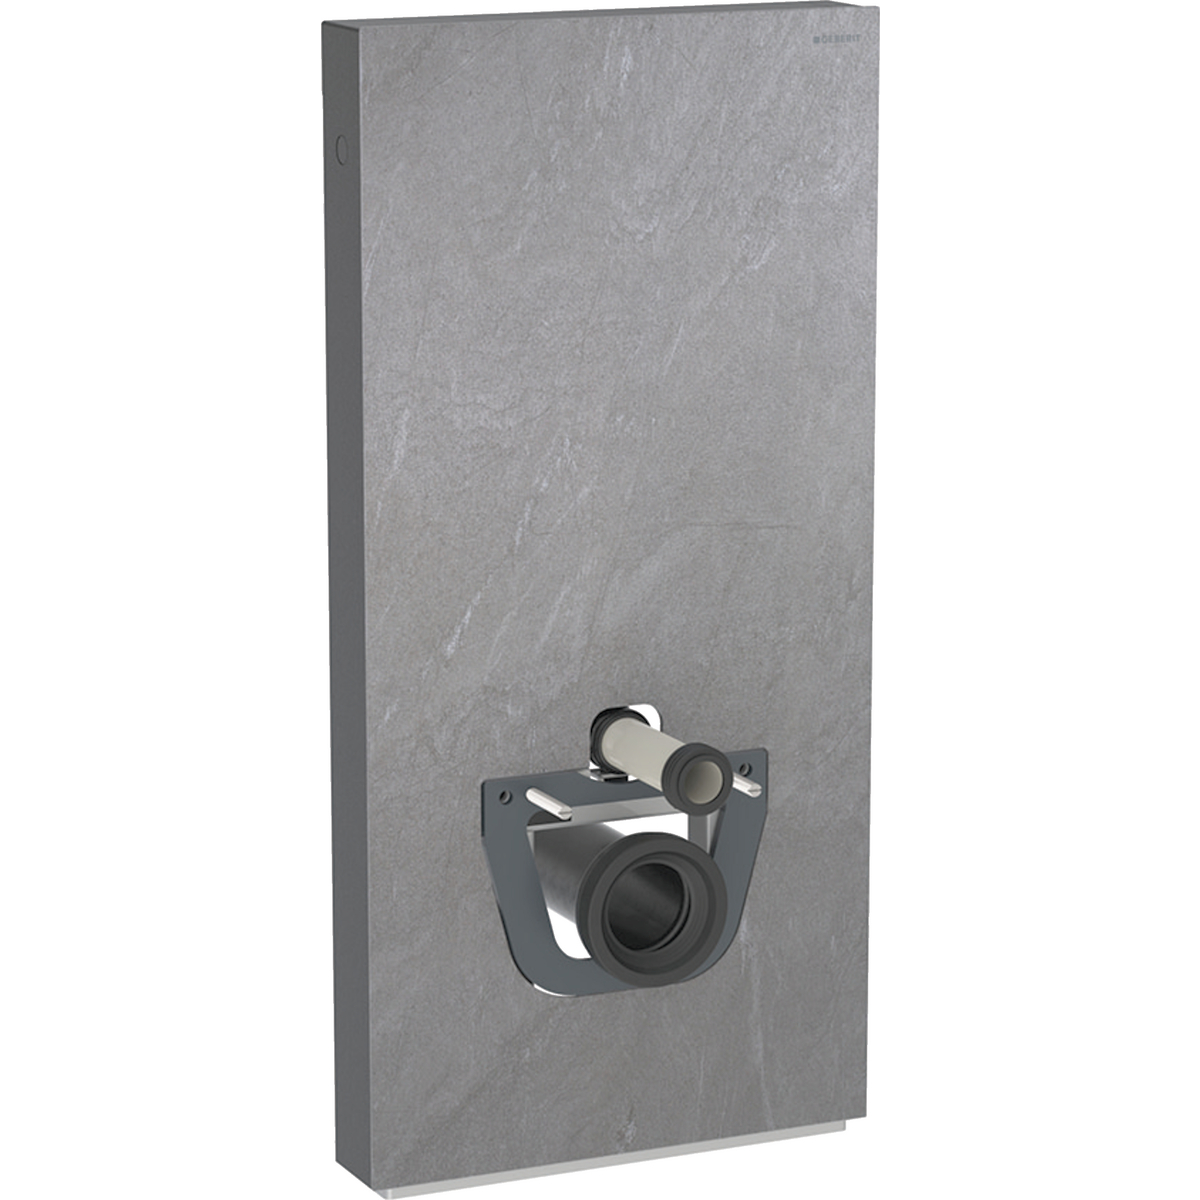 Monolith Sanitärmodul für Wand-WC, 101 cm, Frontverkleidung aus Steinzeug: Steinzeug Schieferoptik, Aluminium schwarzchrom